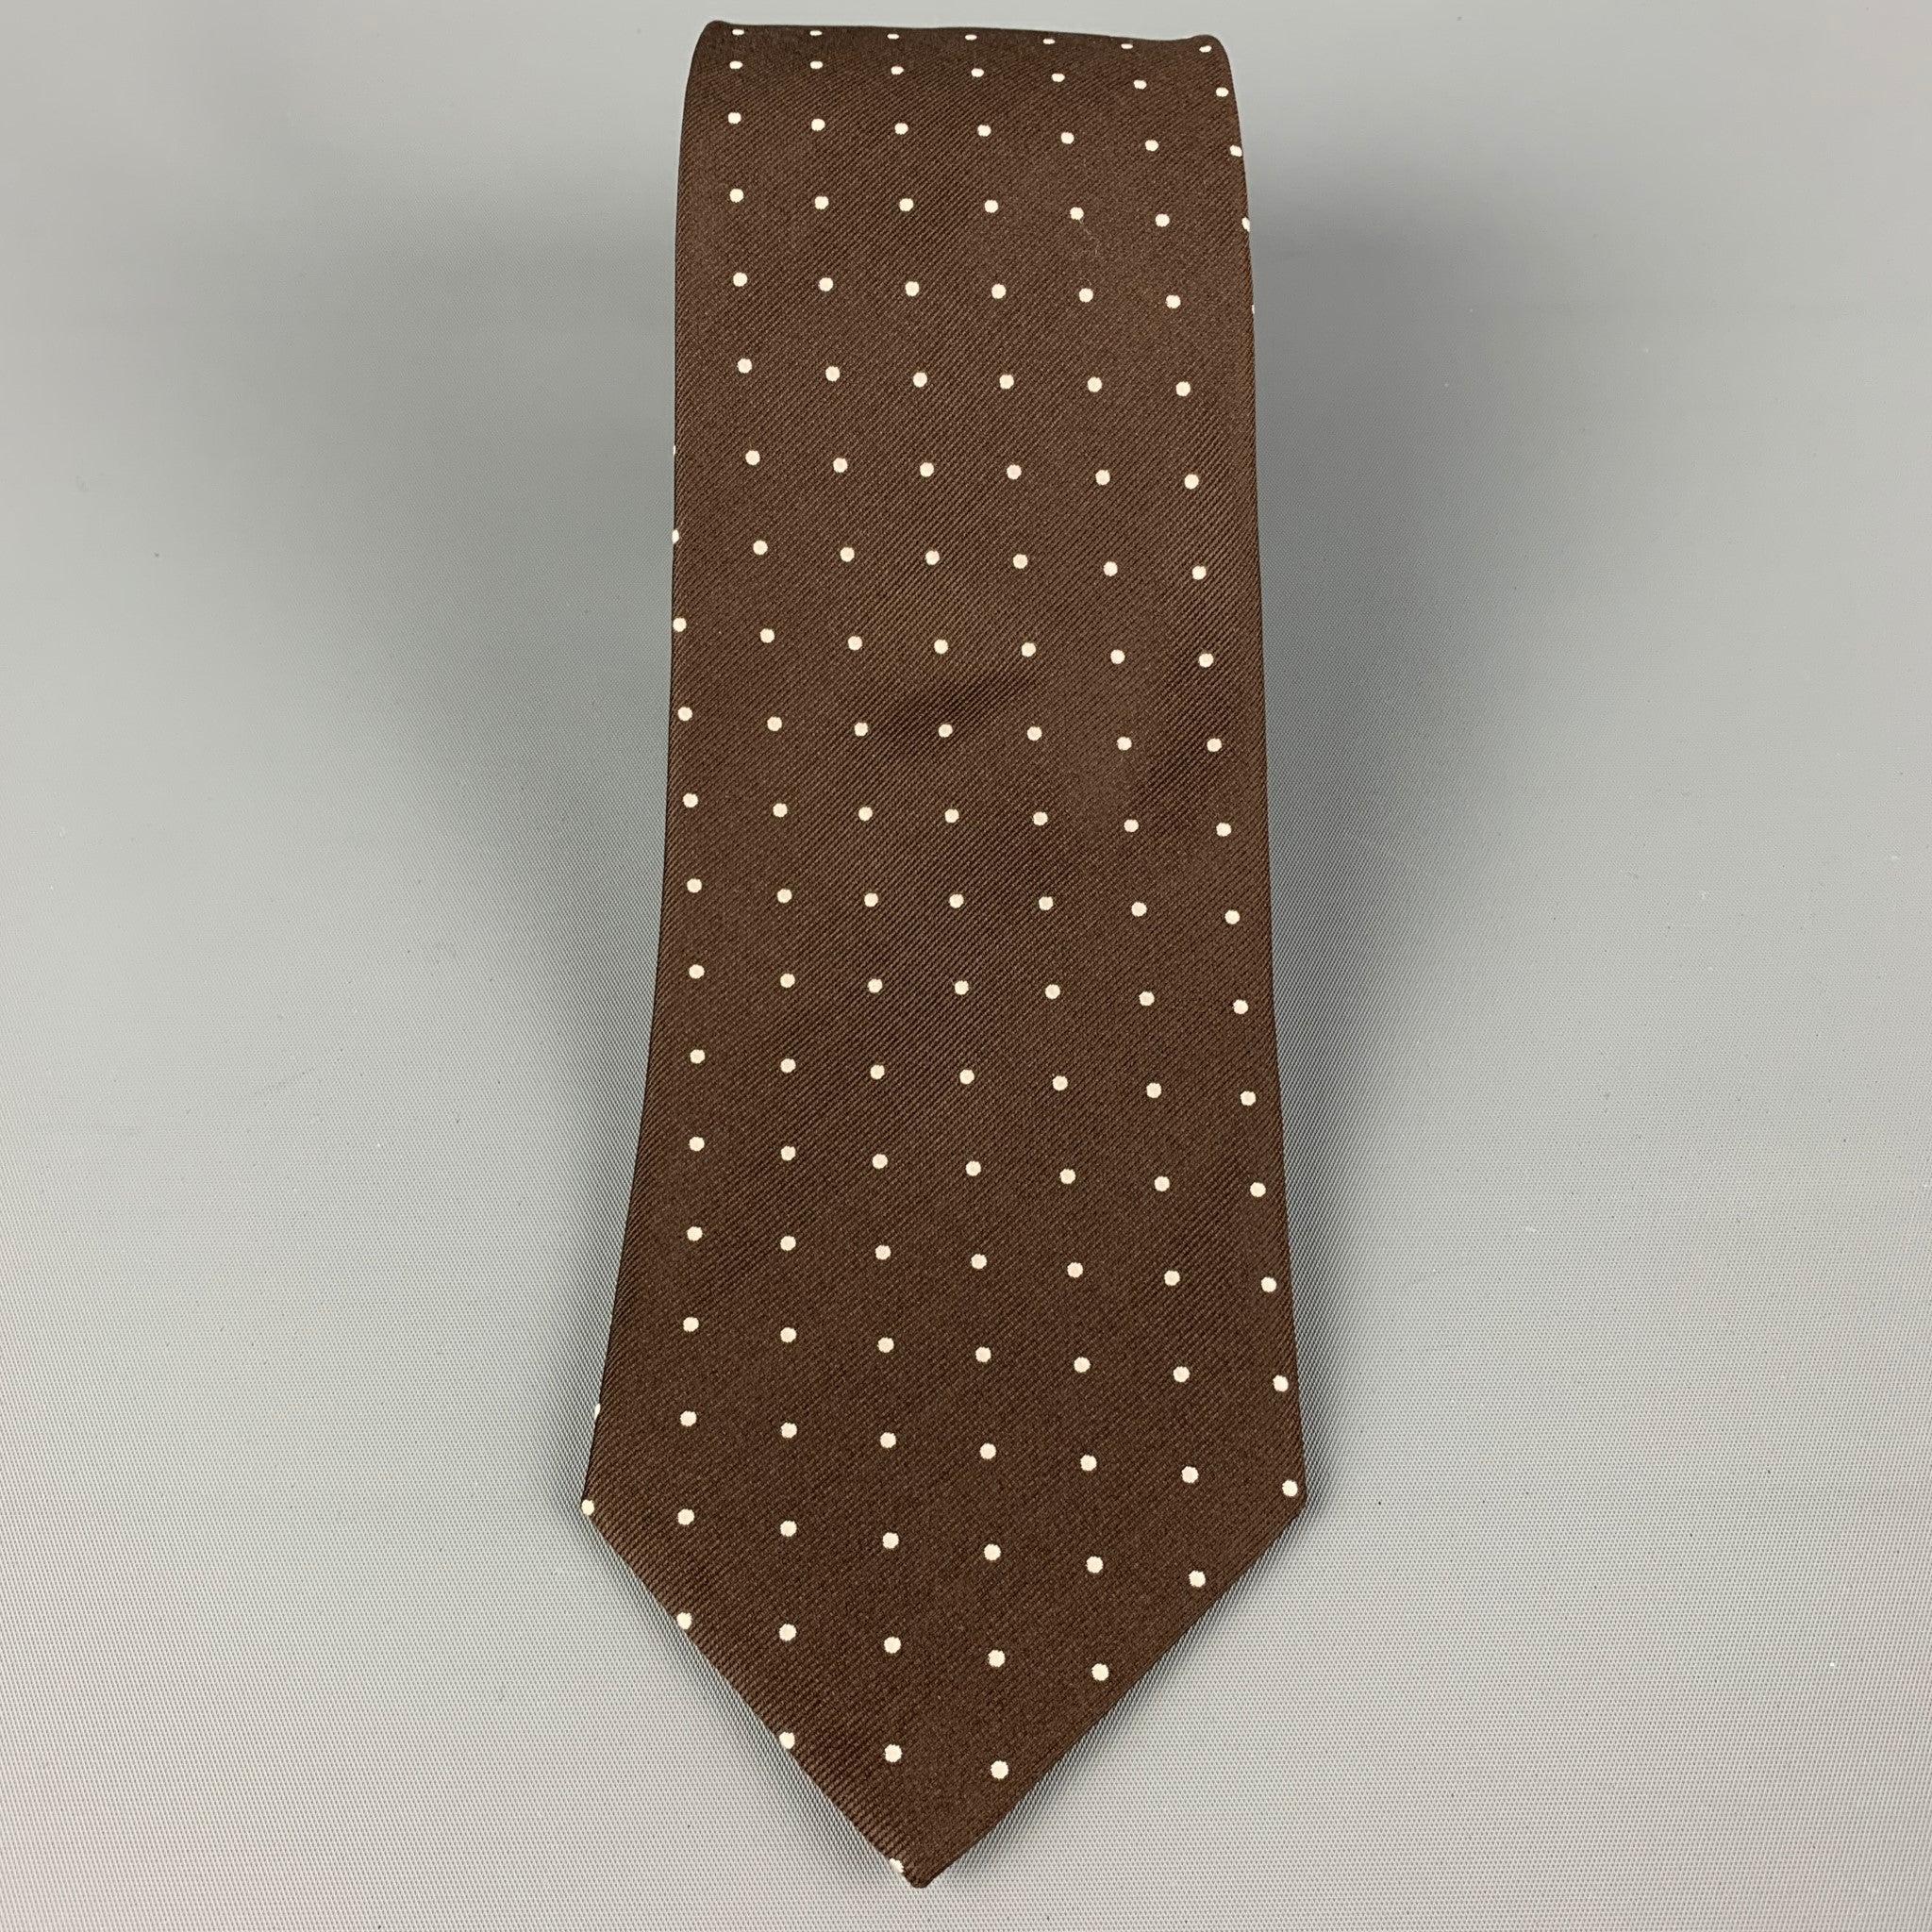 ERMENEGILDO ZEGNA für WILKES BASHFORD
Die Krawatte ist aus brauner und weißer Seide mit einem Tupfenmuster. Hergestellt in Italien. Sehr guter, gebrauchter Zustand Breite: 3,5 Zoll Länge: 58 Zoll 
  
  
 
Referenz: 120415
Kategorie: Krawatte
Mehr